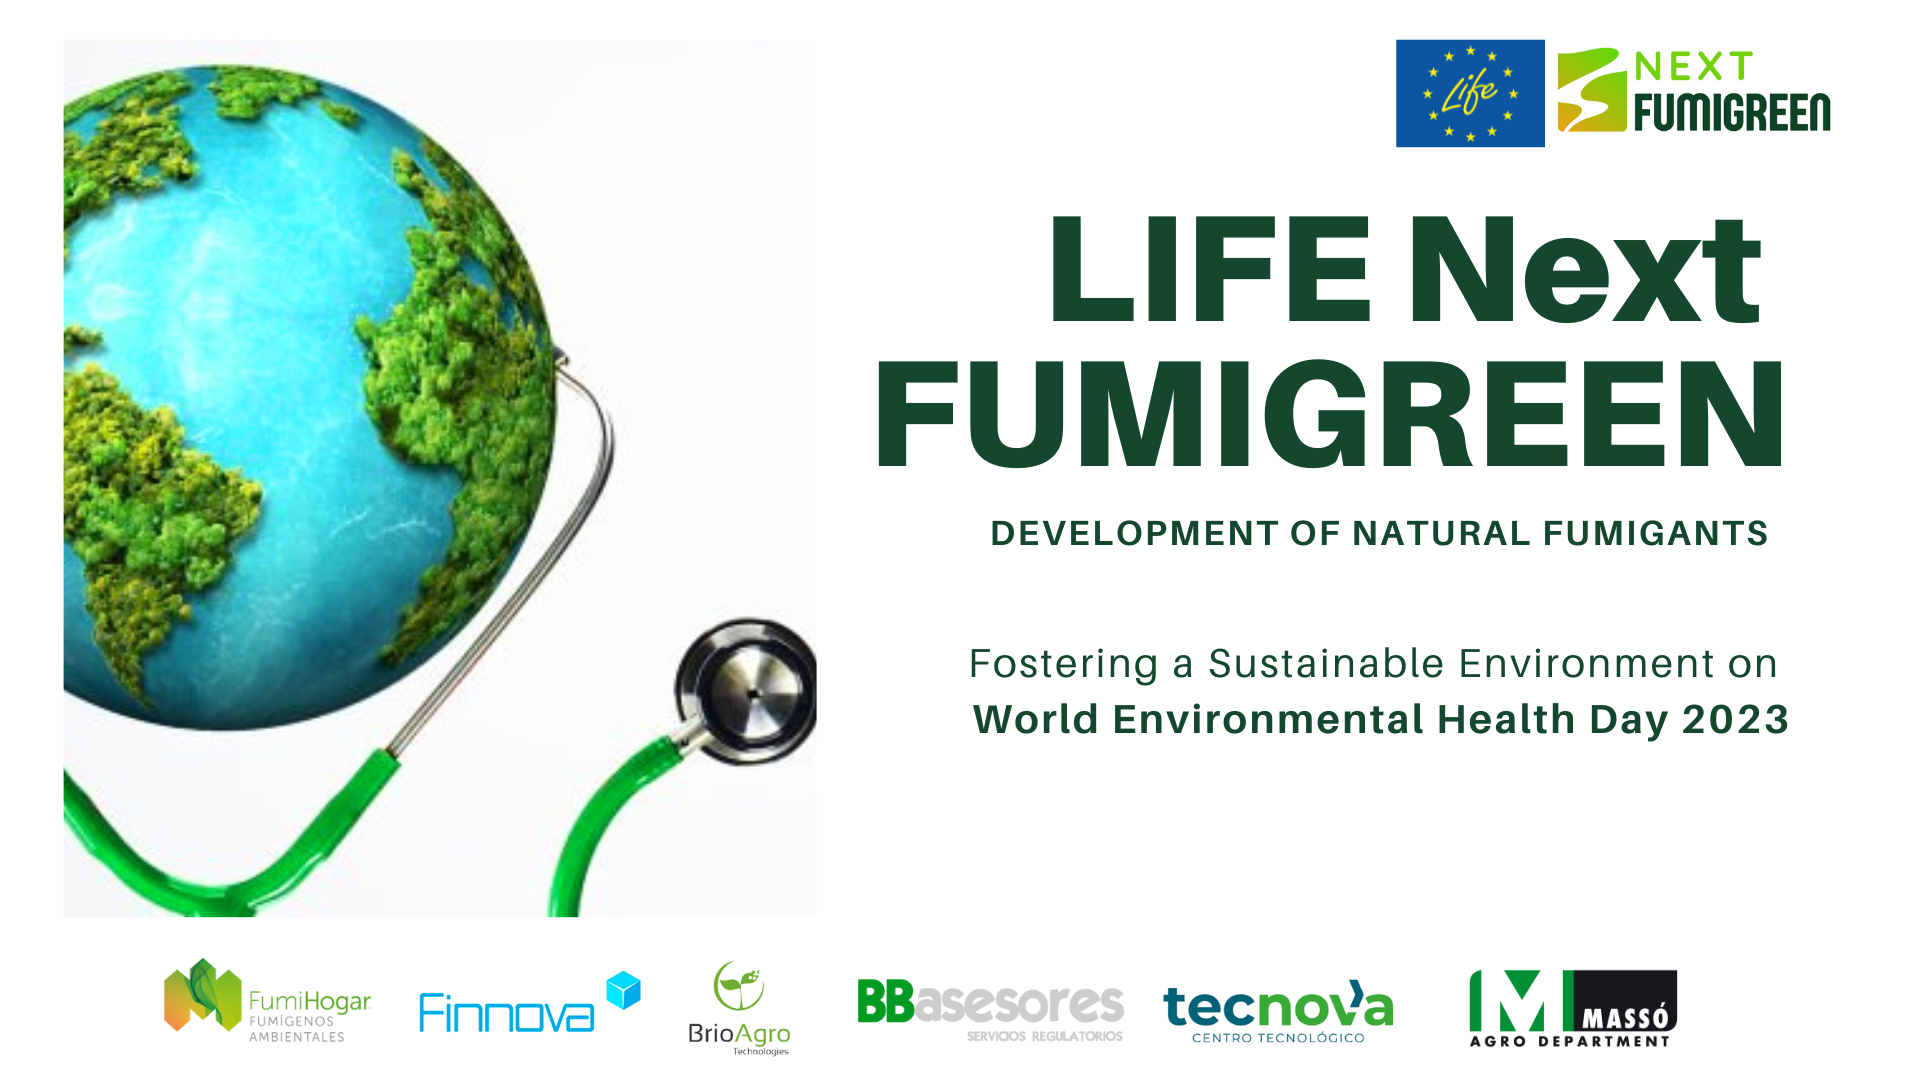 LIFE NextFUMIGREEN promotes environmental health with natural fumigants